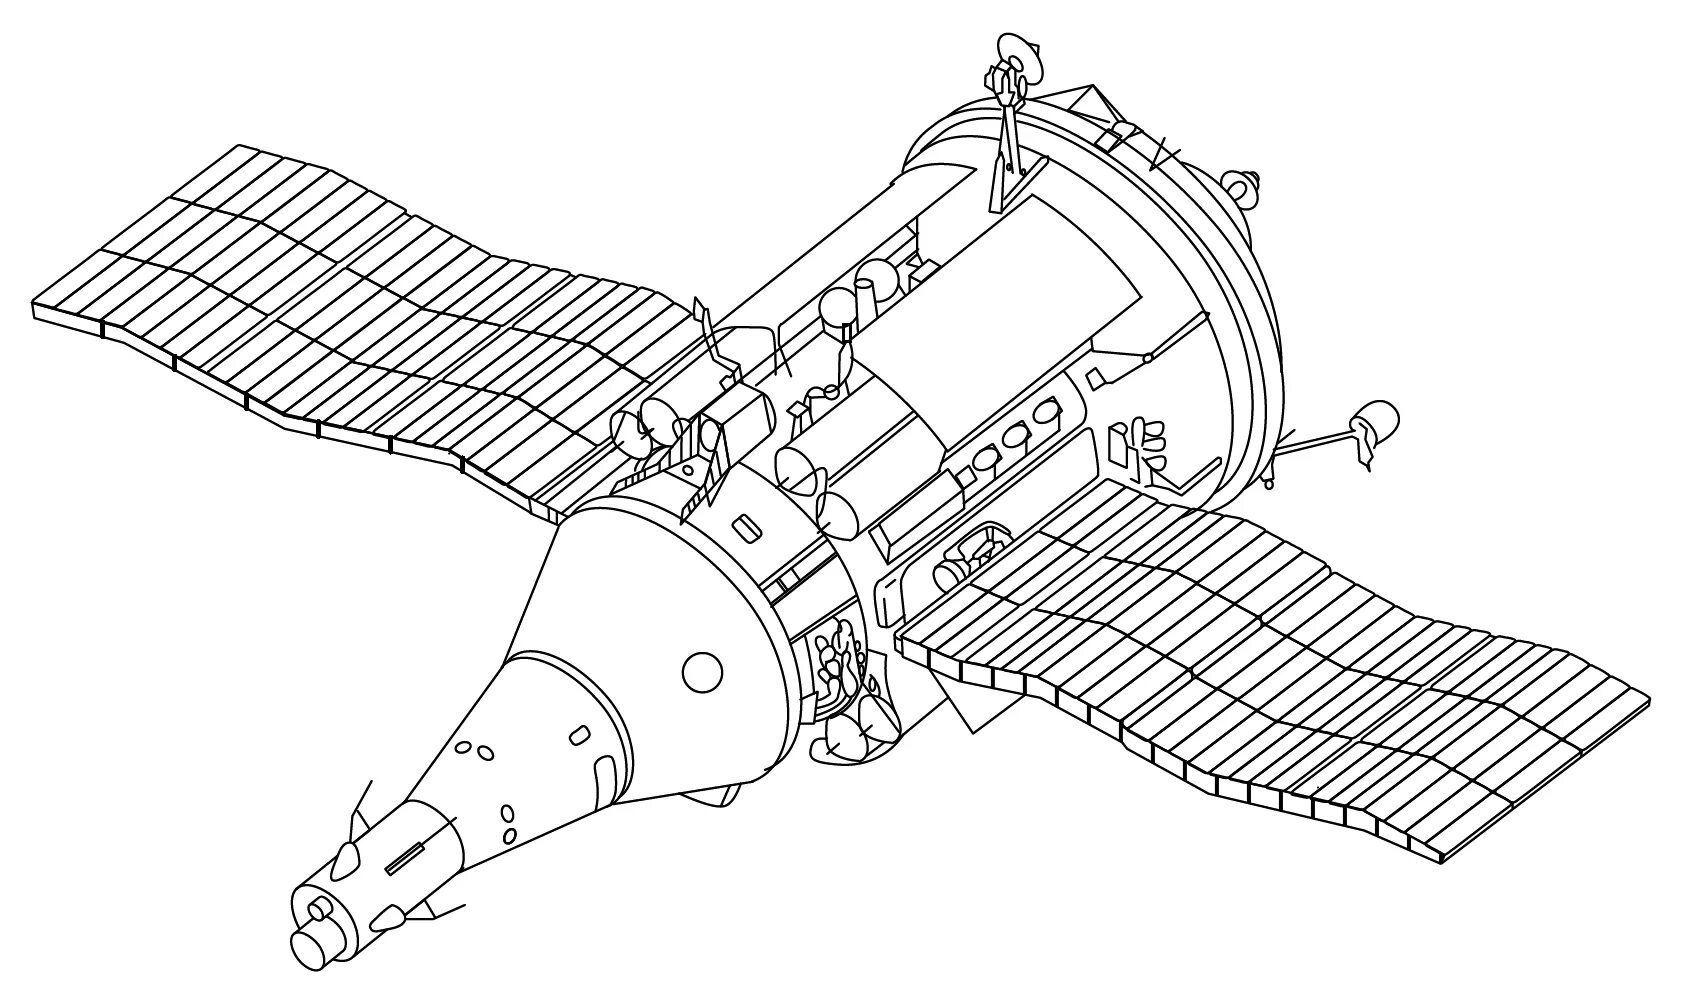 Рисунок спутника в космосе. 11ф72 ТКС. Космос-1686 космический аппарат. Транспортный корабль снабжения ТКС. ТКС чертеж космический корабль.